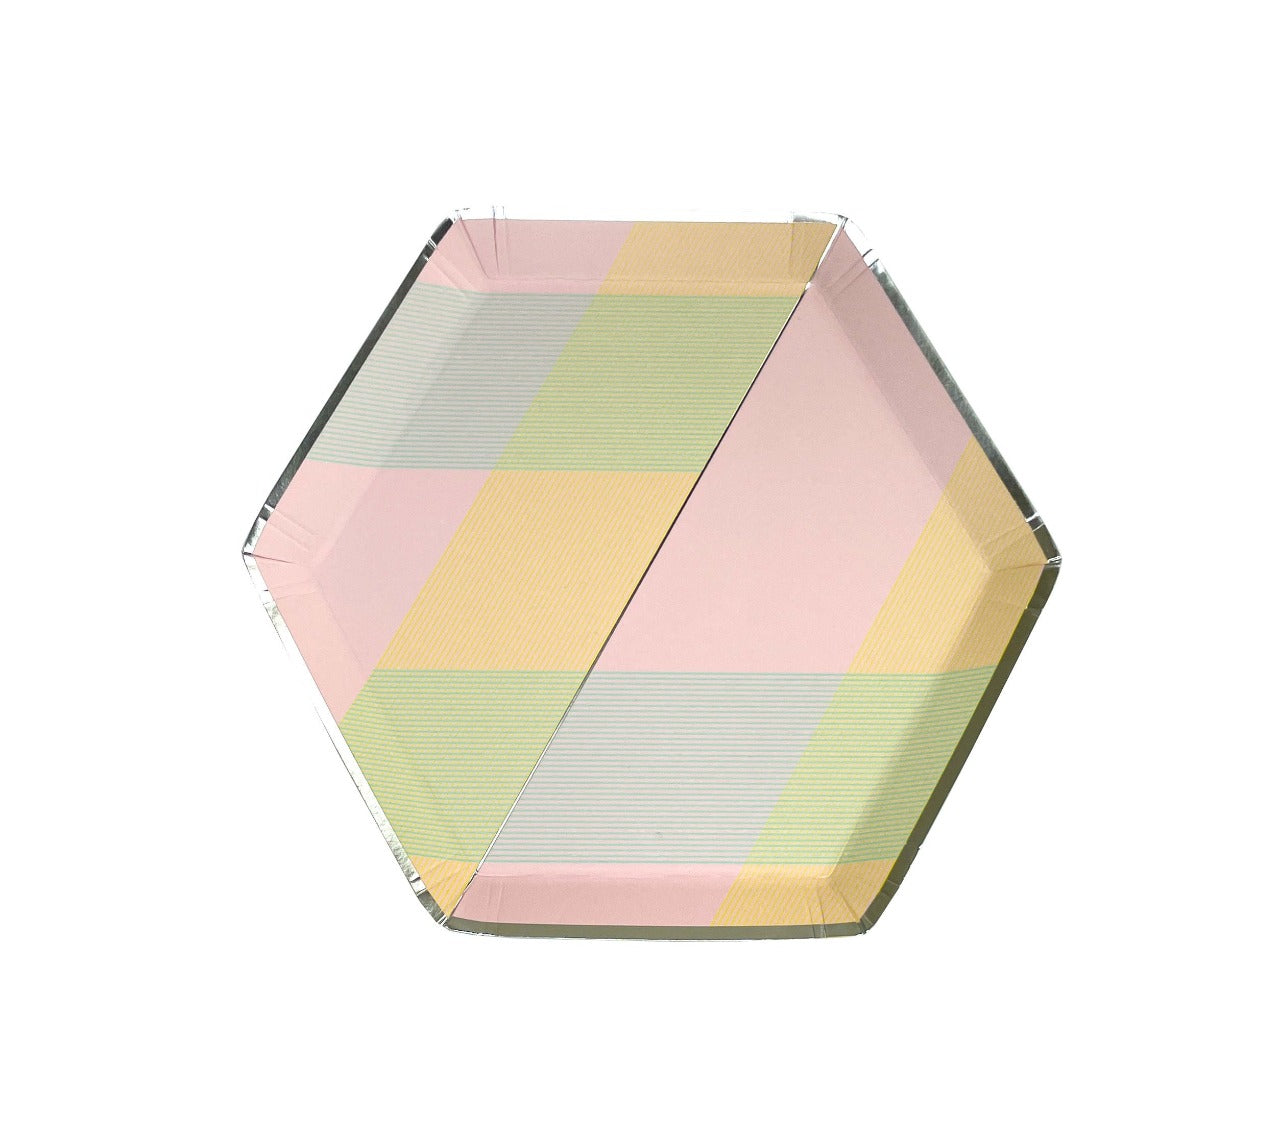 Plato Hexagonal chico- Lineas de colores (8 piezas)